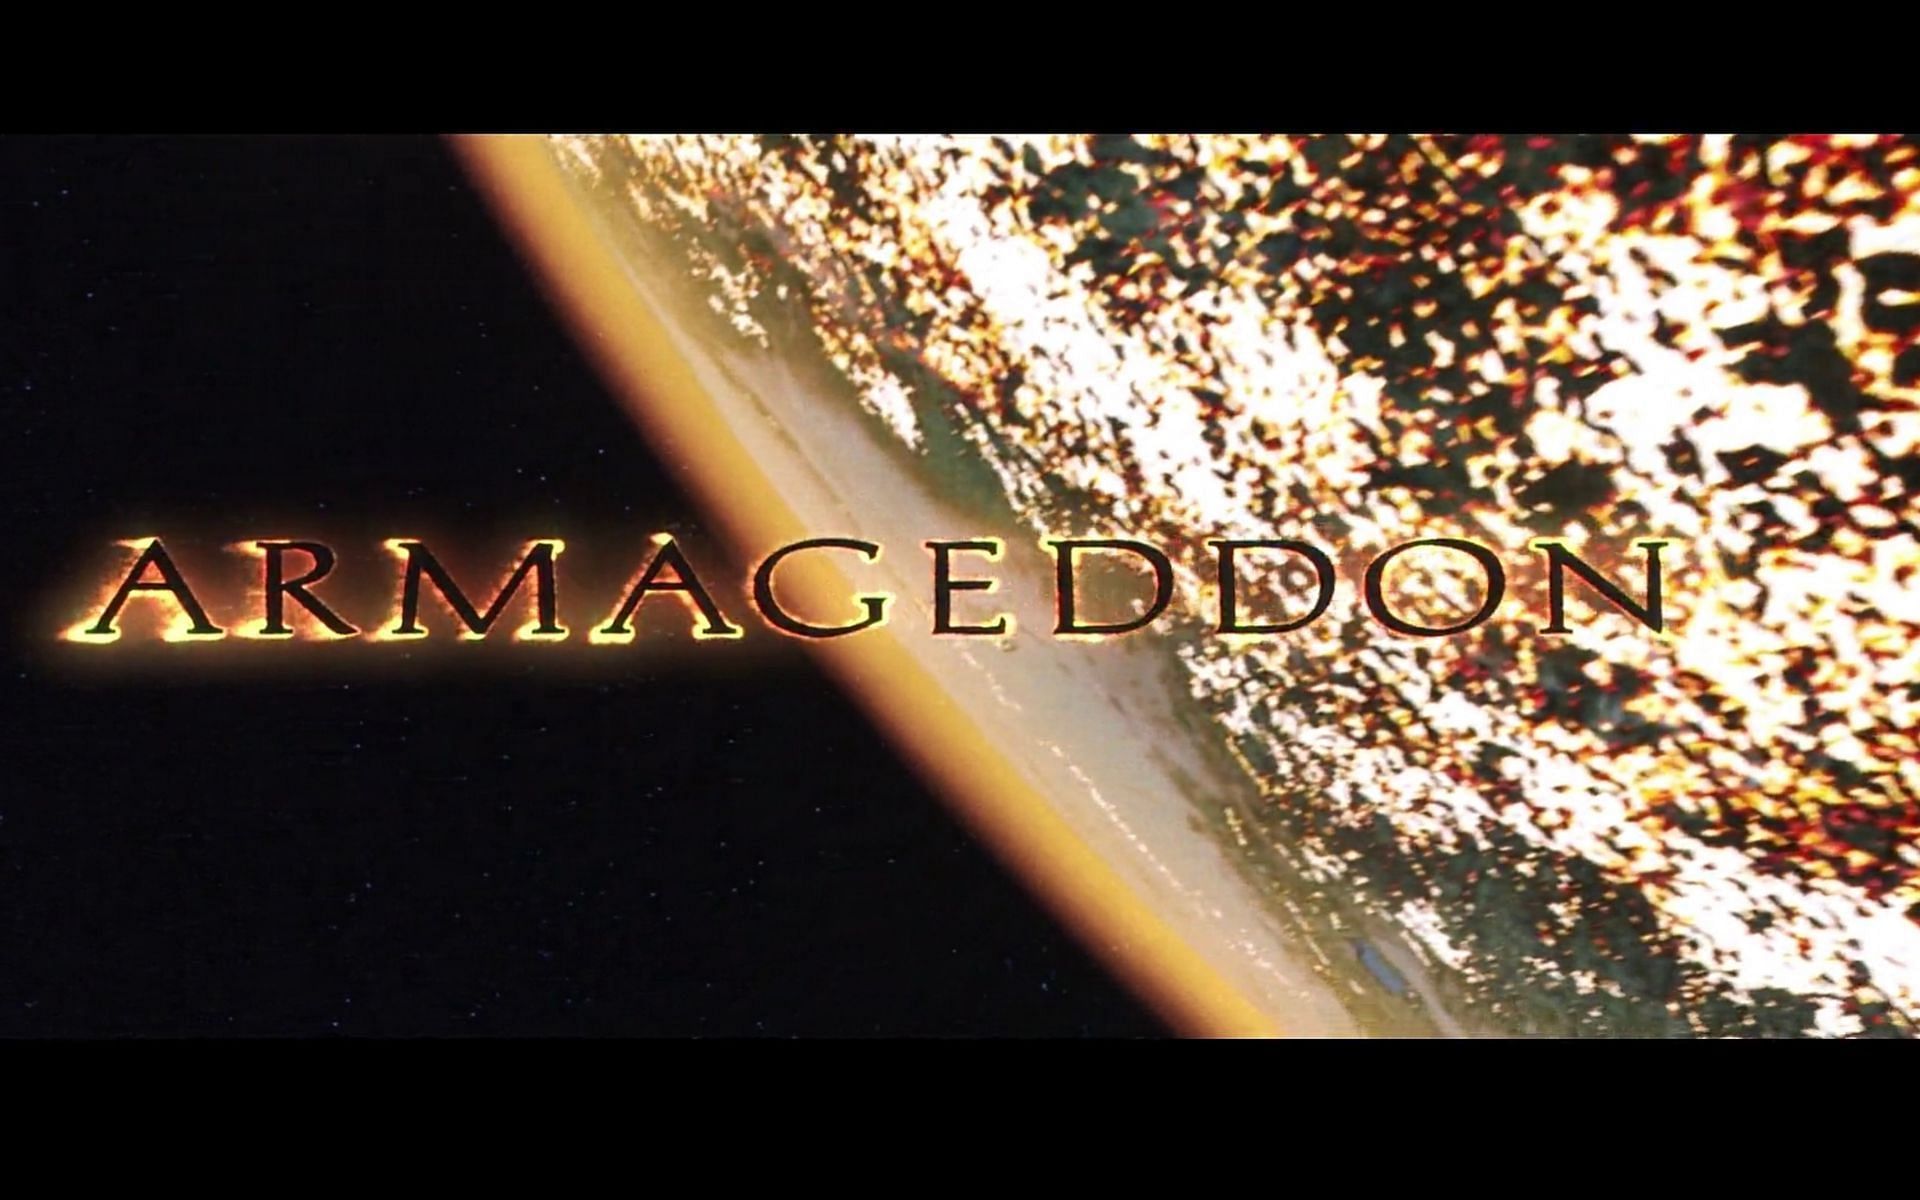 Armageddon 1998 (Imagen vía Disney+hotstar)